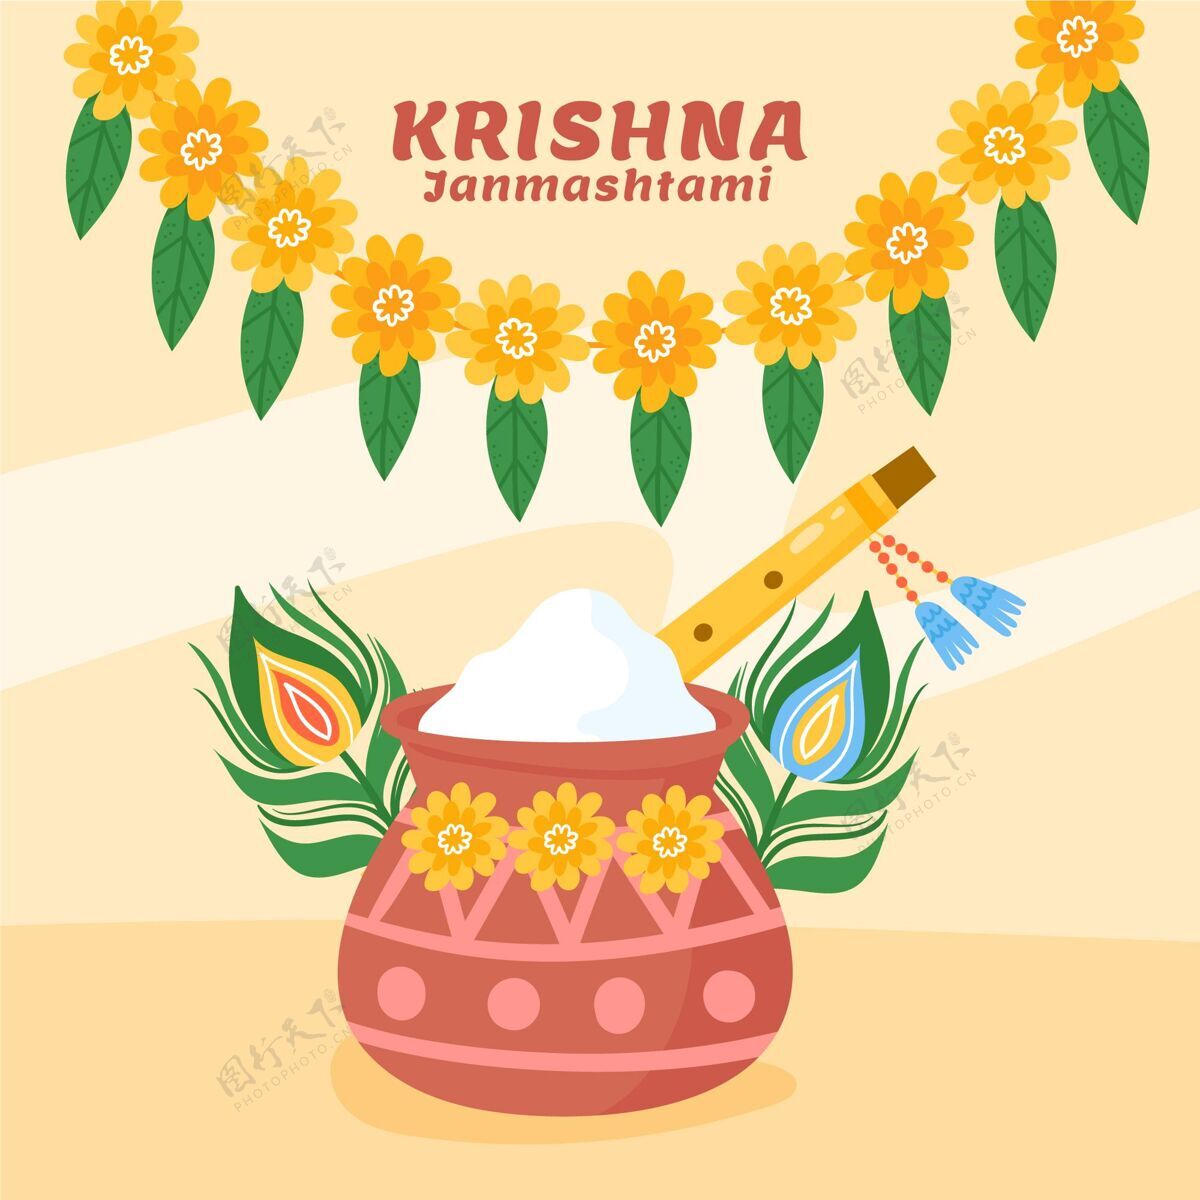 8月31日手绘krishnajanmashtami插图简玛斯塔米活动插画背景